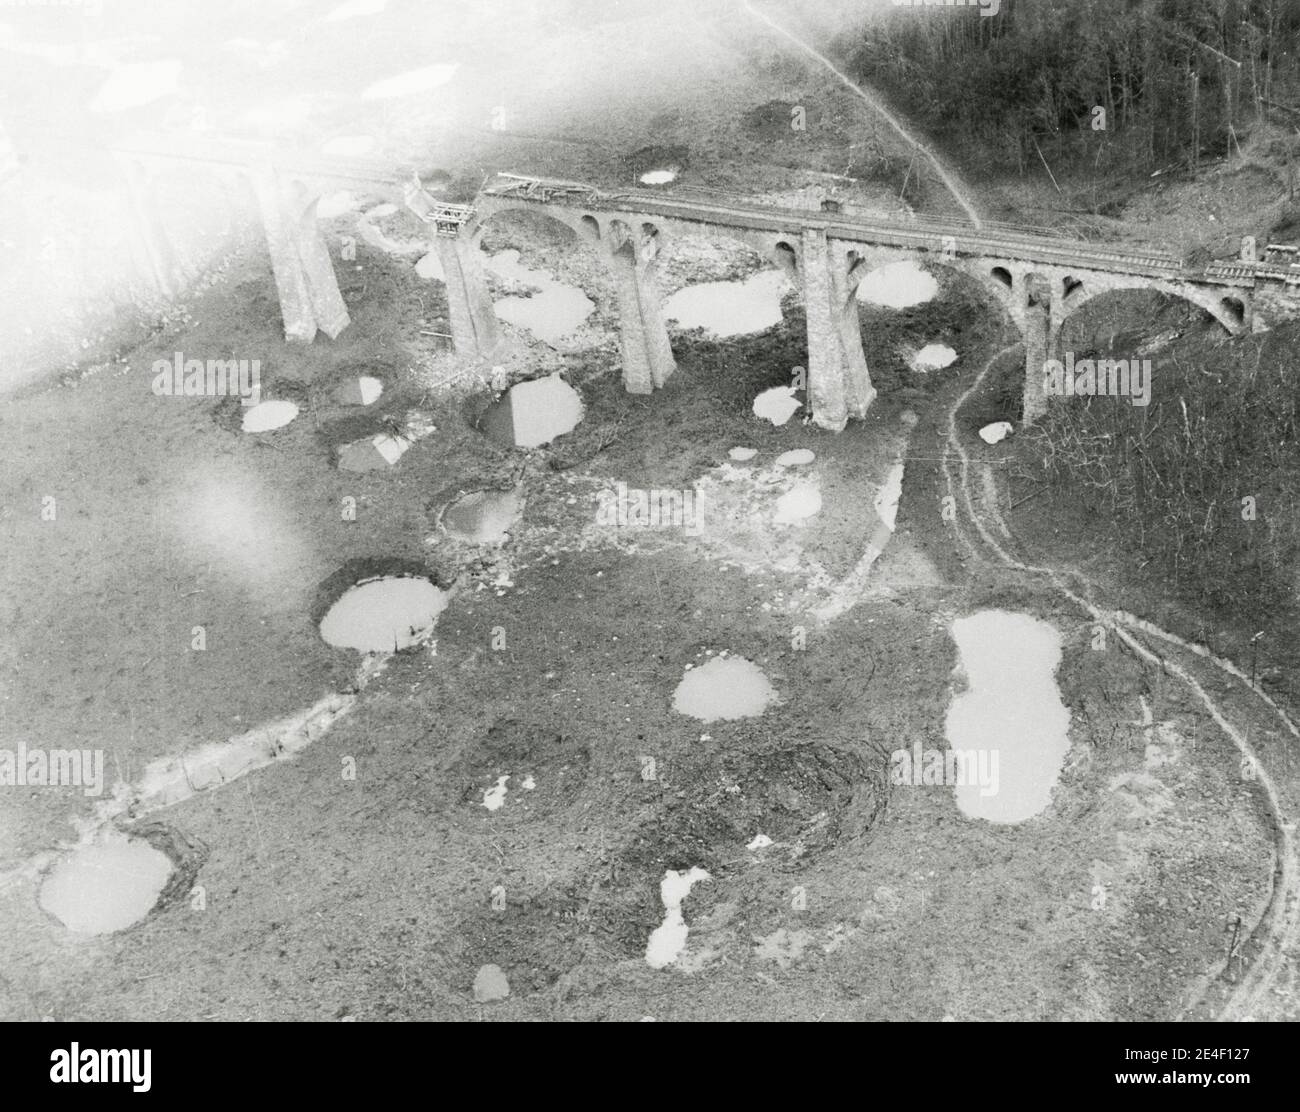 Vintage Segunda Guerra Mundial Fotografía - oficial EE.UU. Militar foto: Puente ferroviario bombardeado, Netze, Alemania, 9 º bombardeo de la Fuerza Aérea. Foto de stock